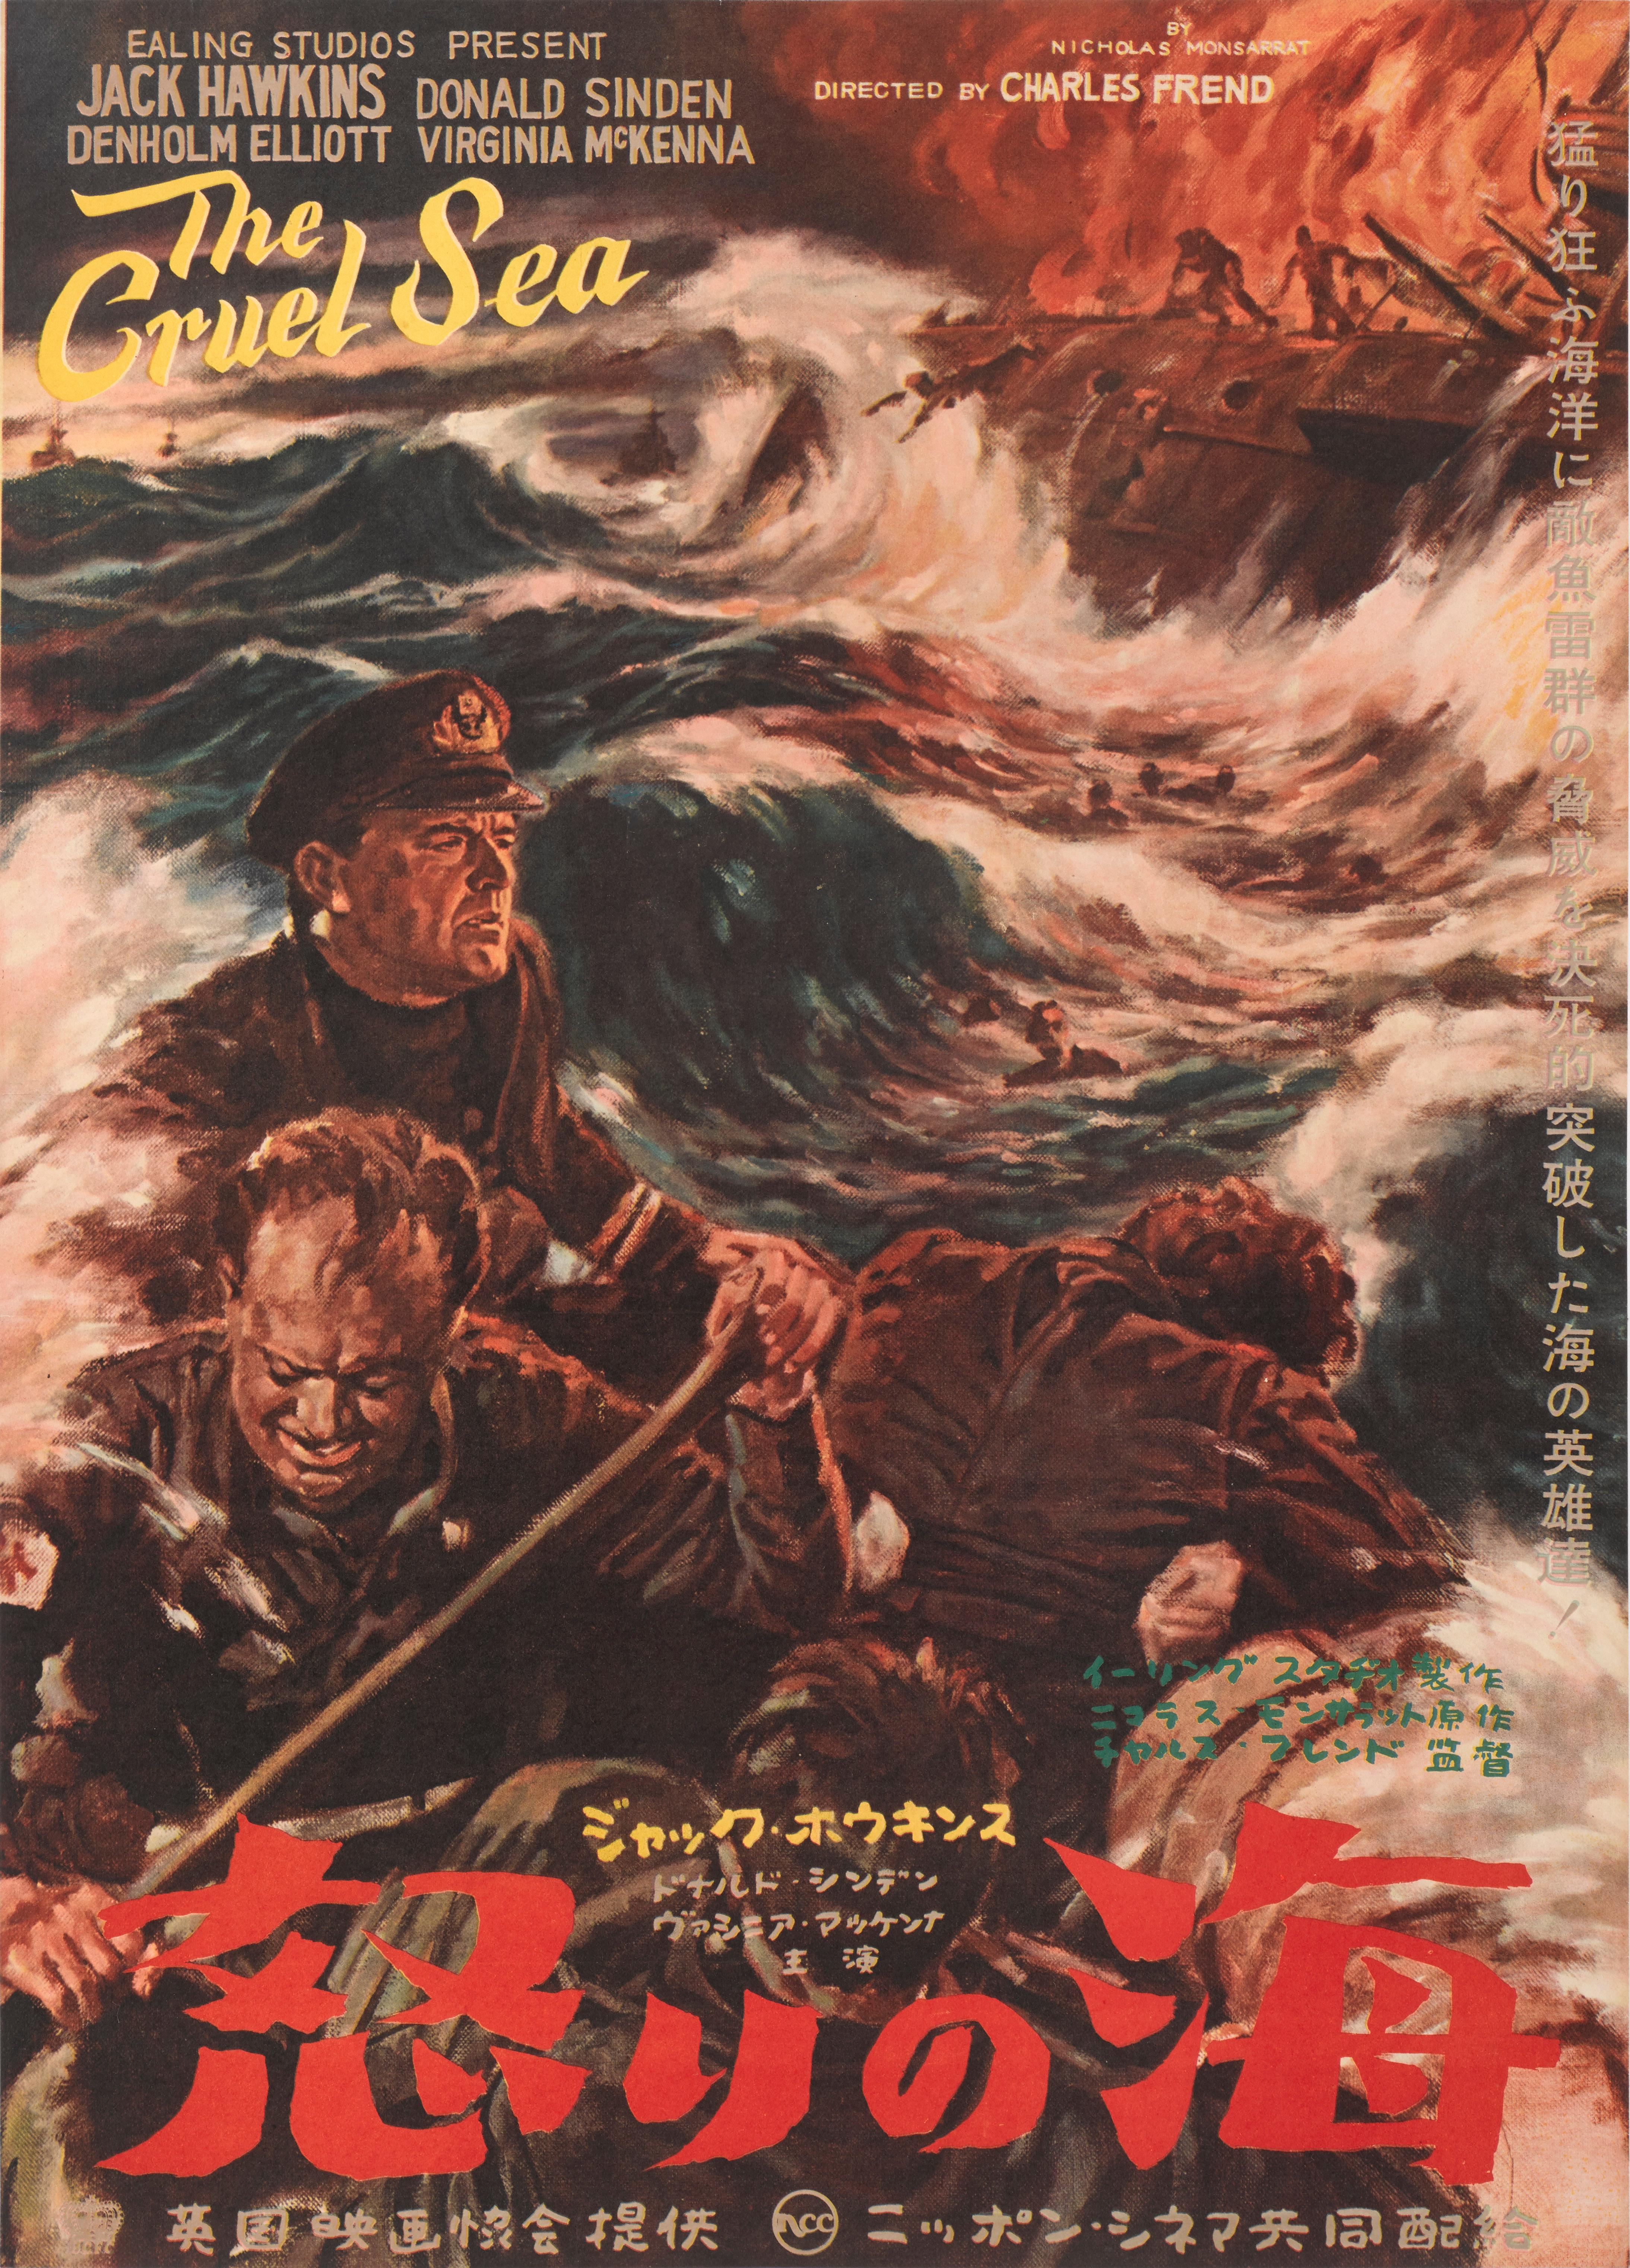 Affiche originale japonaise pour le drame de guerre The Cruel Sea des studios Ealing.
Ce film met en vedette Jack Hawkins, Donald Sinden et a été réalisé par Charles Frend.
L'œuvre d'art de cette affiche est unique à la sortie japonaise du film un